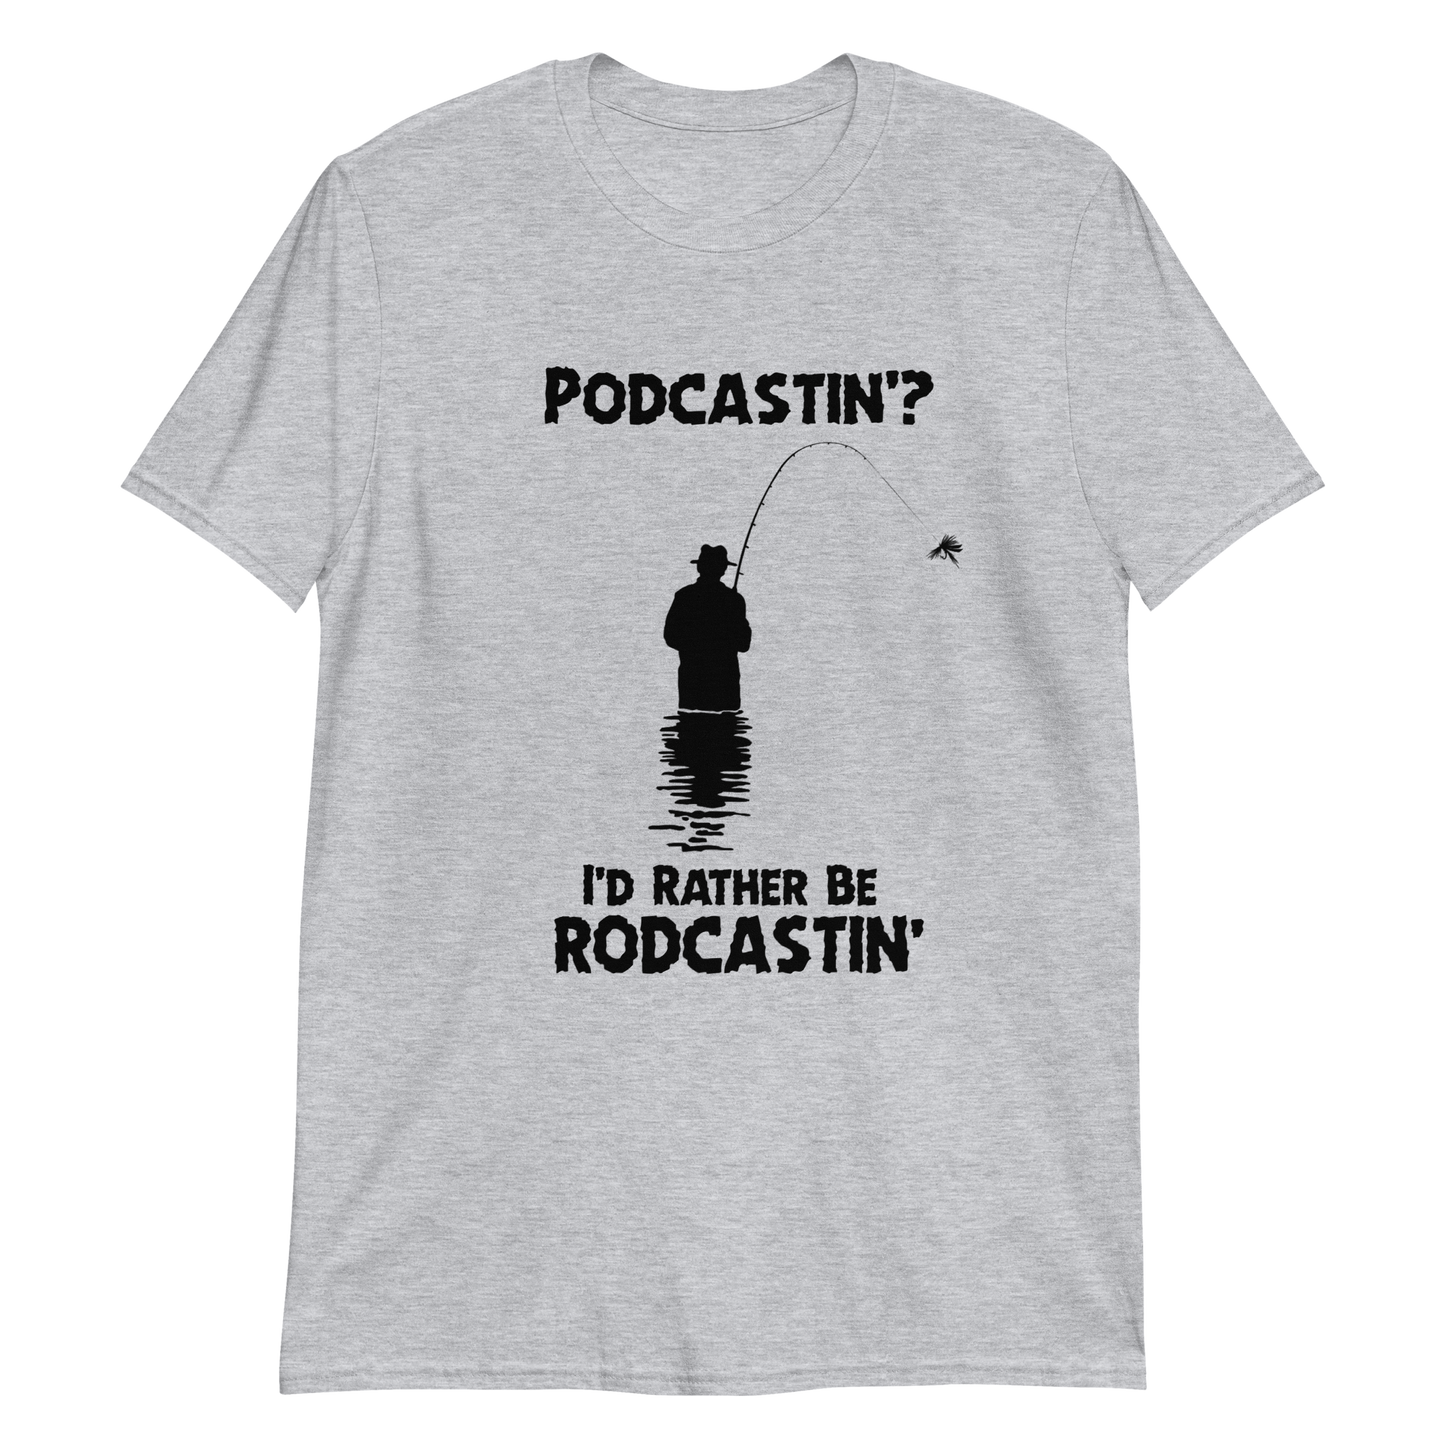 Podcastin'? I'd rather be rodcastin.'